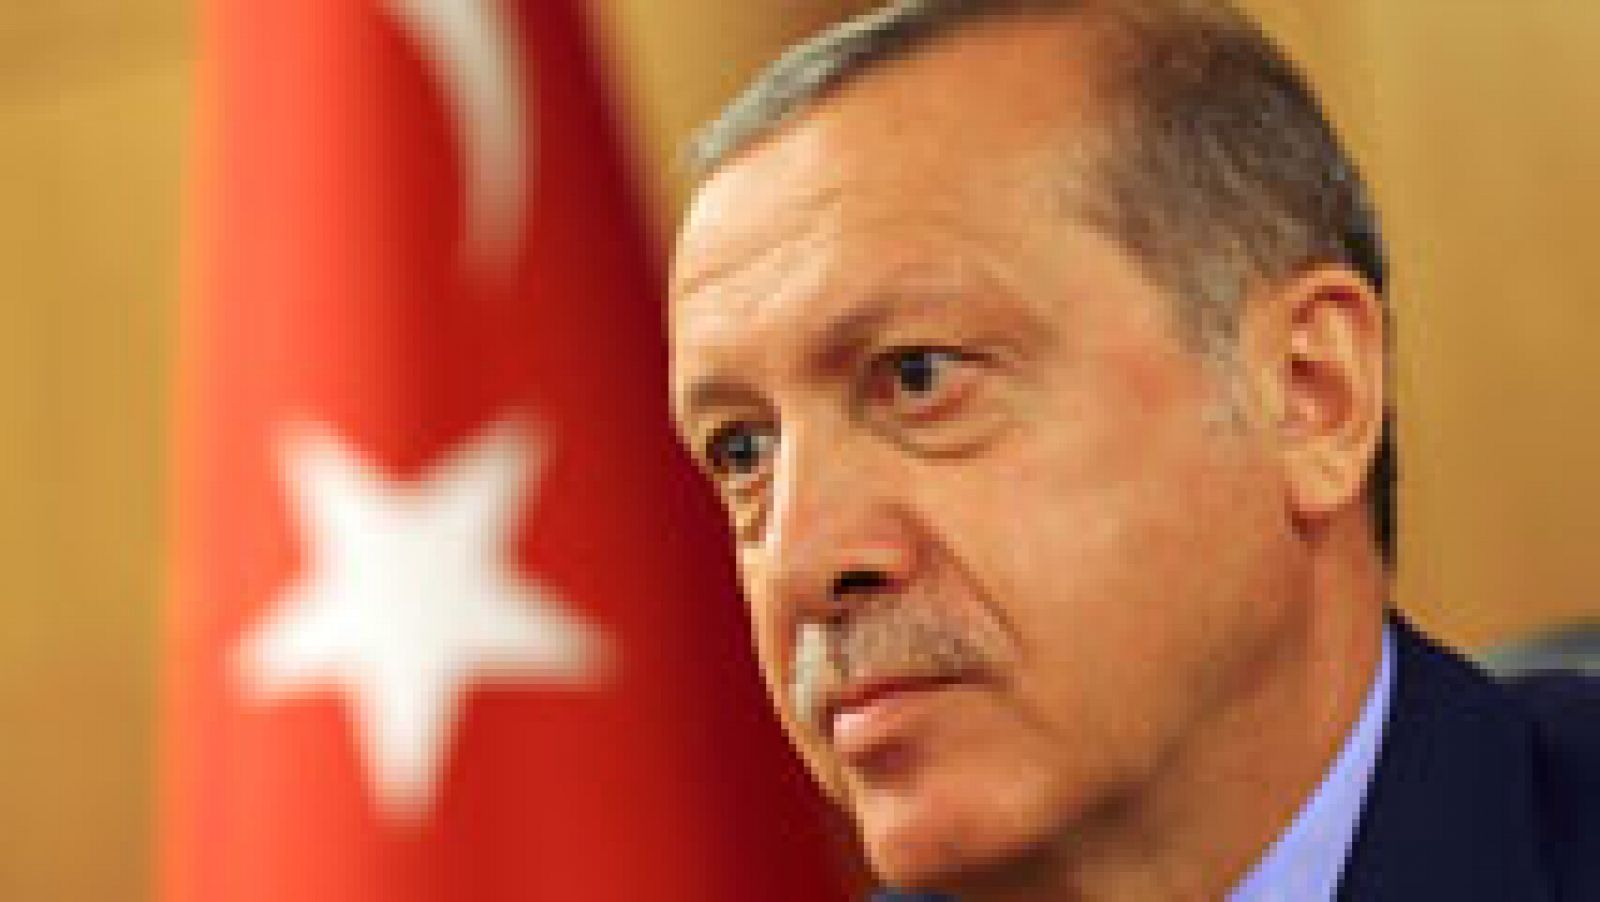 El presidente Recep Tayyip Erdogan es el hombre más poderoso de Turquía. Ejerció como primer ministro turco entre marzo de 2003 y agosto de 2014, y anteriormente como alcalde de Estambul entre 1994 y 1998. En 1998 se le prohibió tomar cualquier puest